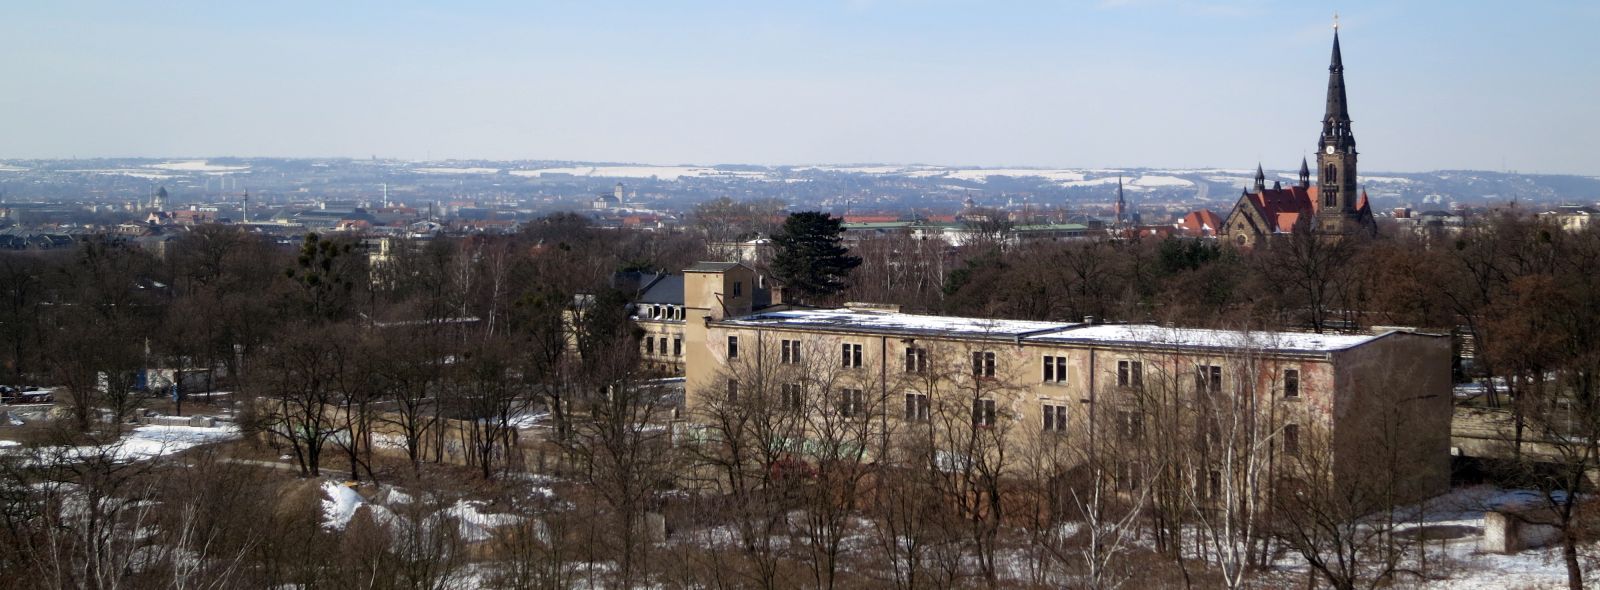 Die Albertstadt vom Dach der Melli-Beese-Schule aus gesehen. Foto: Archiv